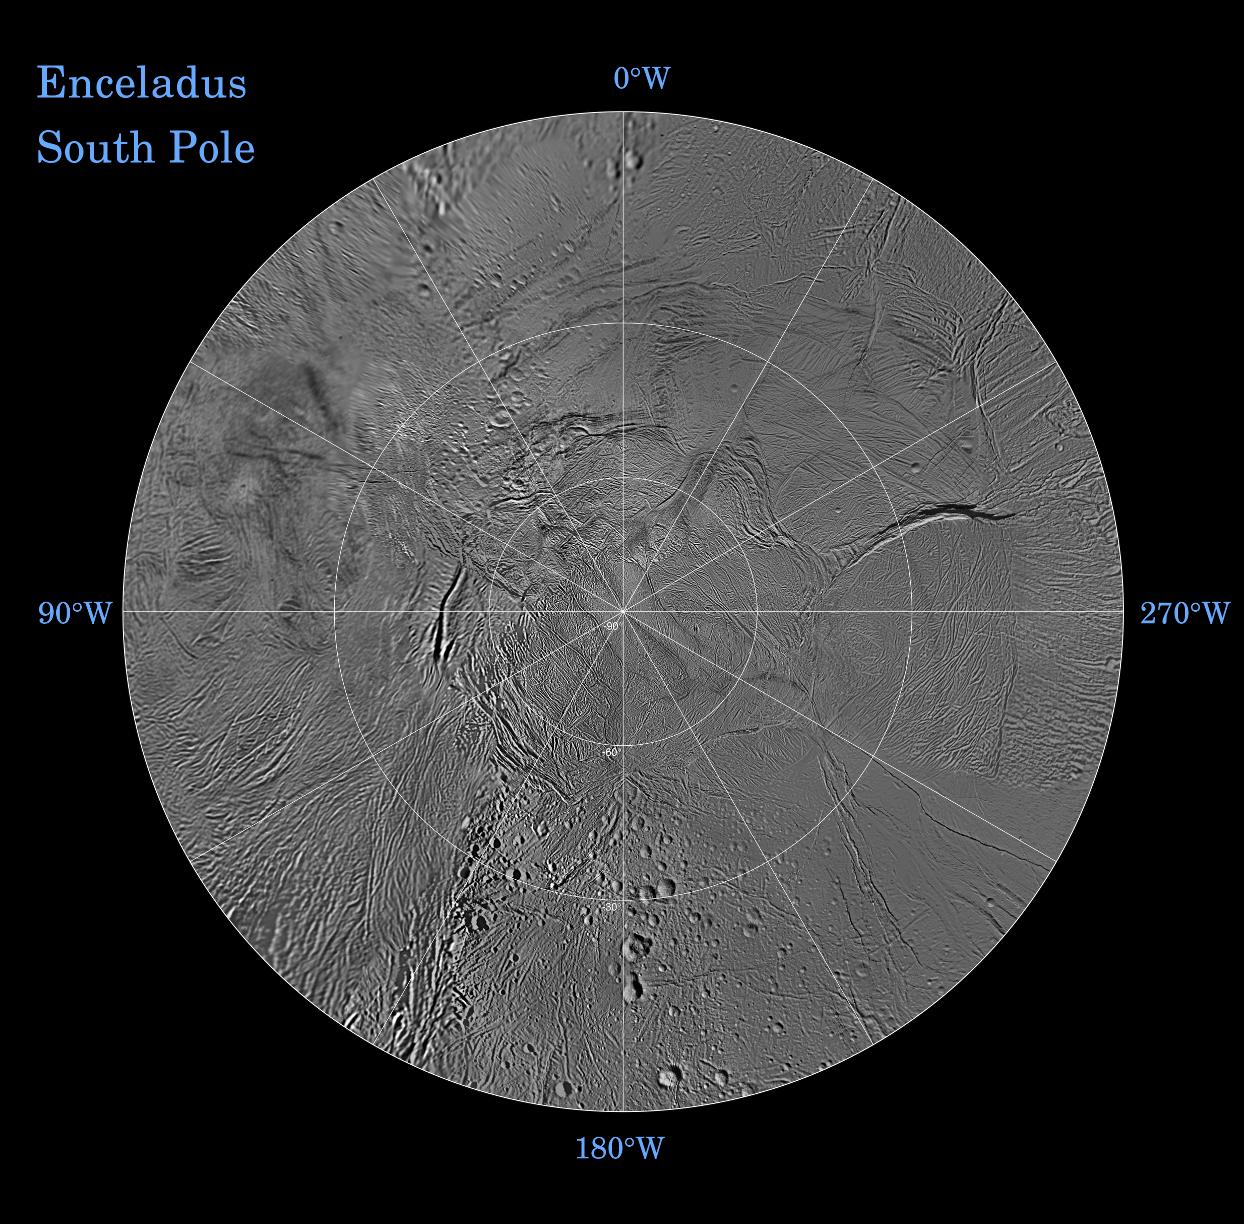 The southern hemisphere of Enceladus